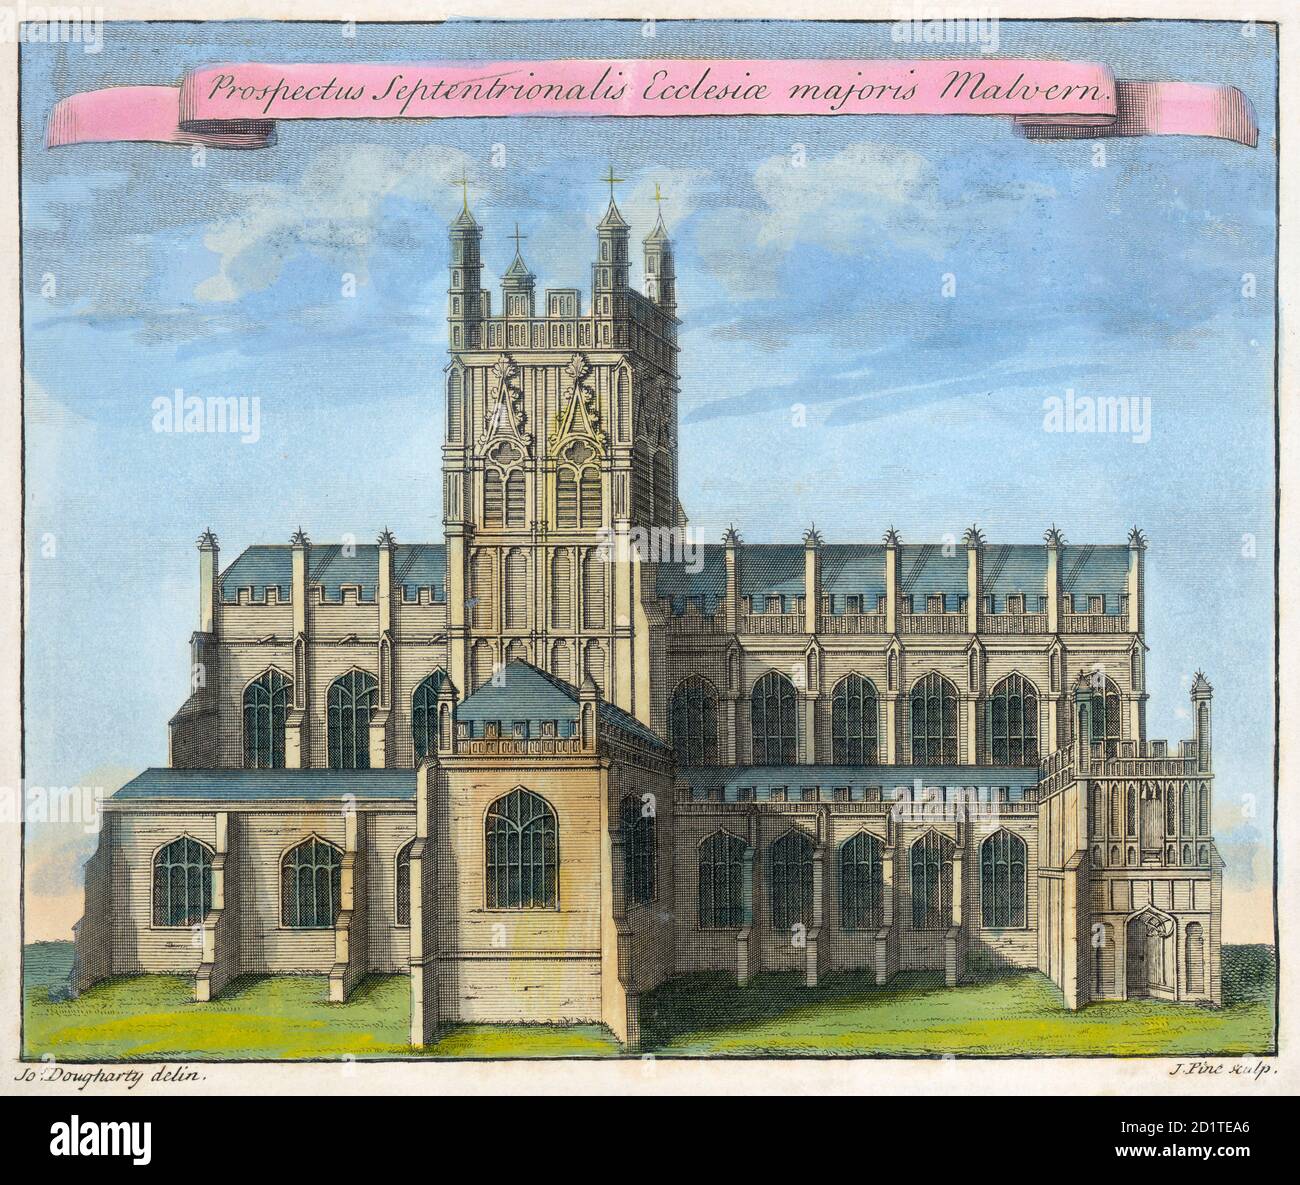 MAYSON BEETON KOLLEKTION. Great Malvern Priory, Worcestershire. 'Nordansicht der Kirche von Great Malvern' von Joseph Dougharty. Linienfarbiger Stich datiert 1730. Stockfoto